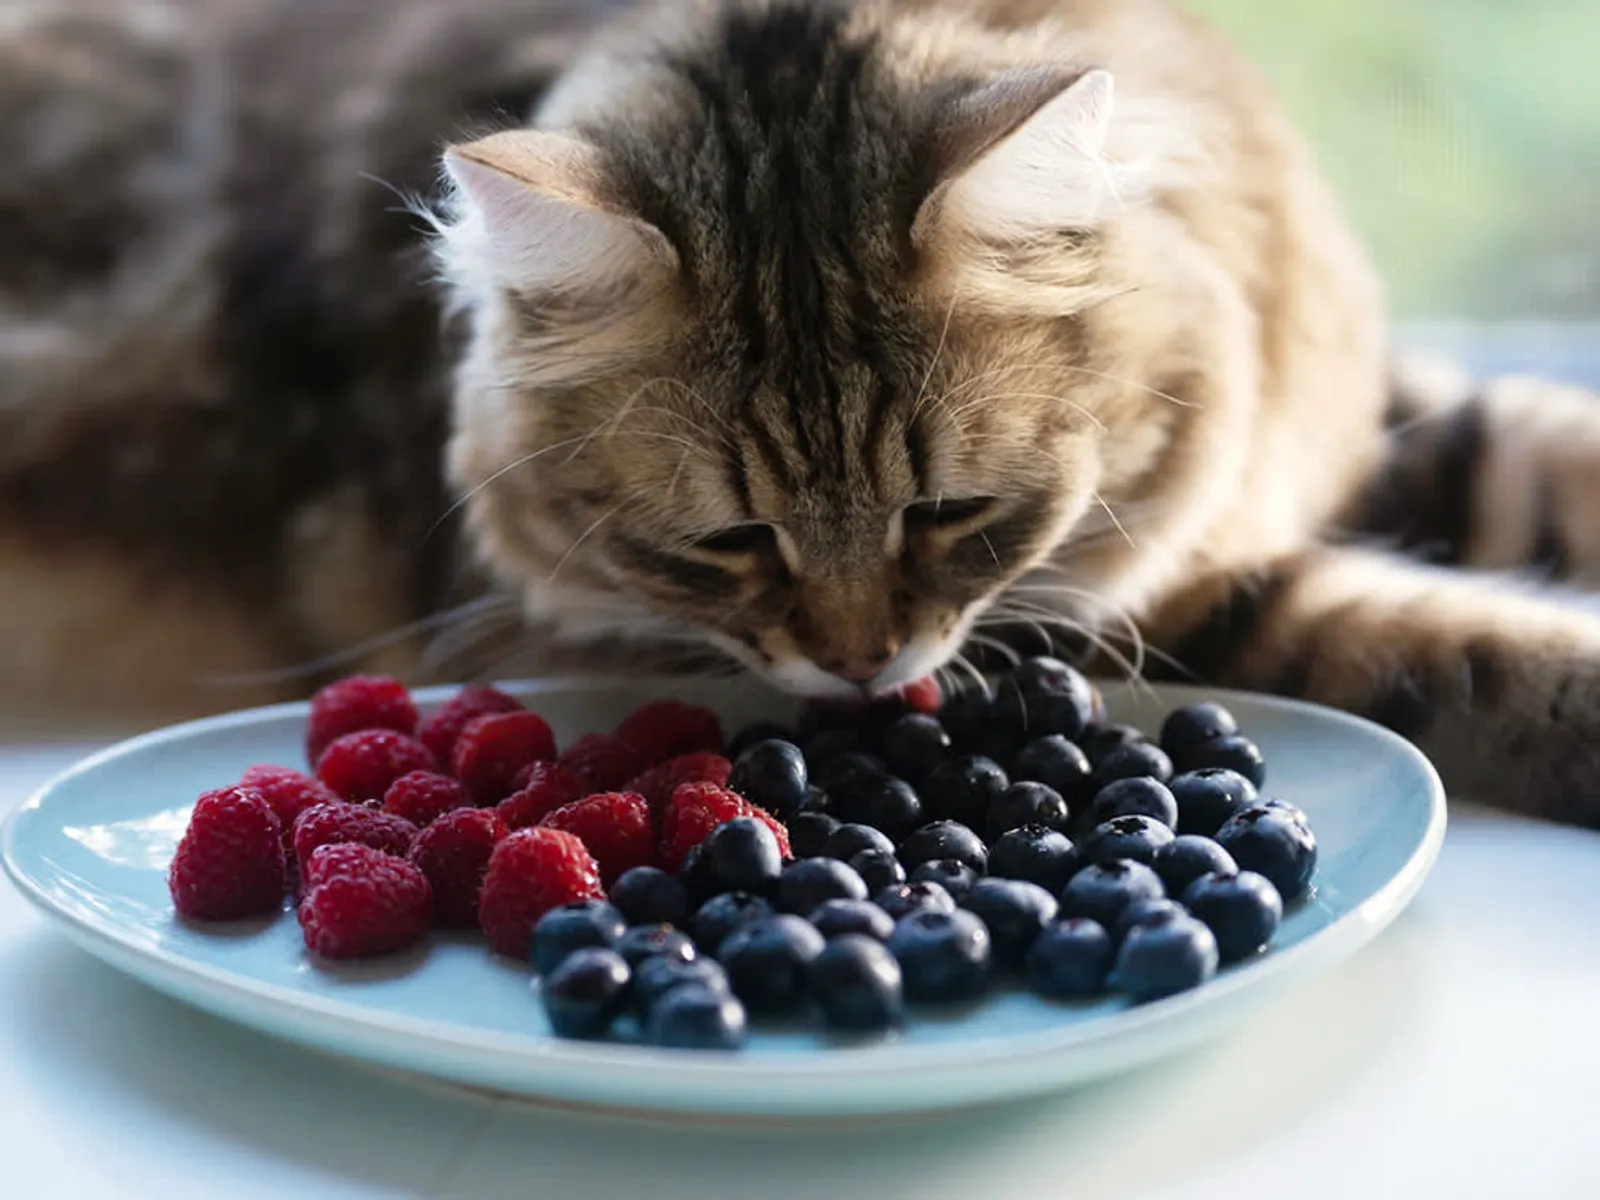 Merupakan Hewan Karnivora, Bolehkah Kucing Makan Buah?